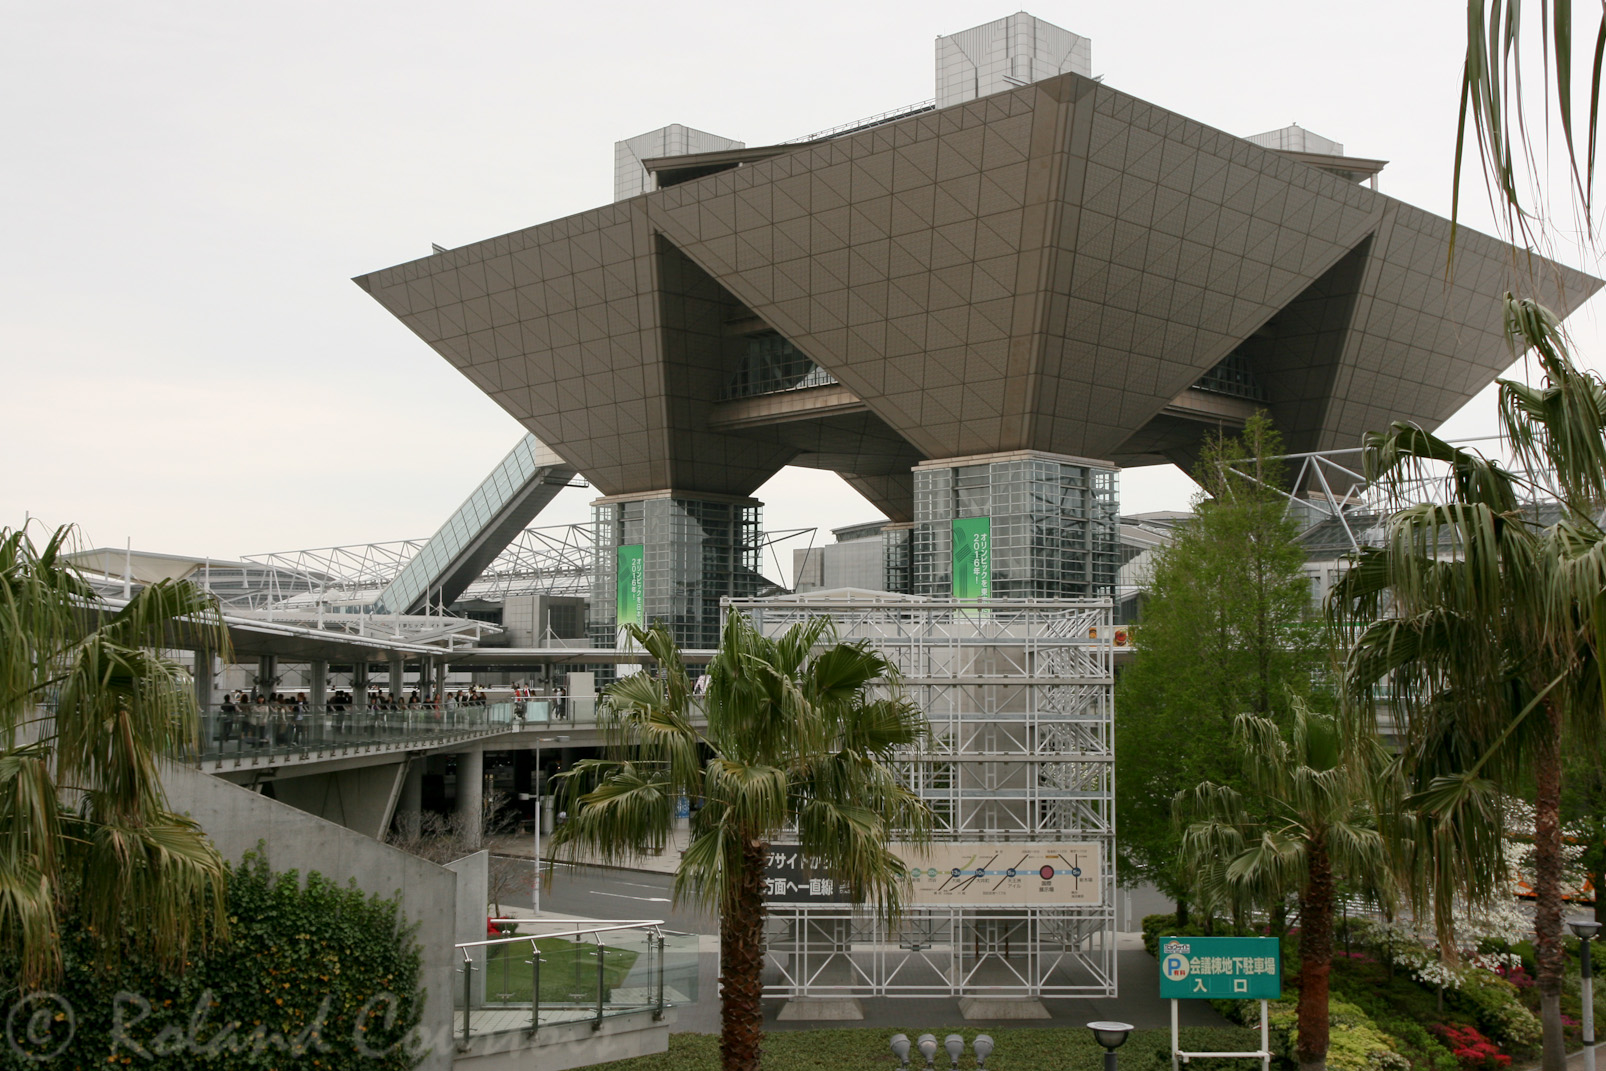 Tokyo Big Sight, parc d'expositions